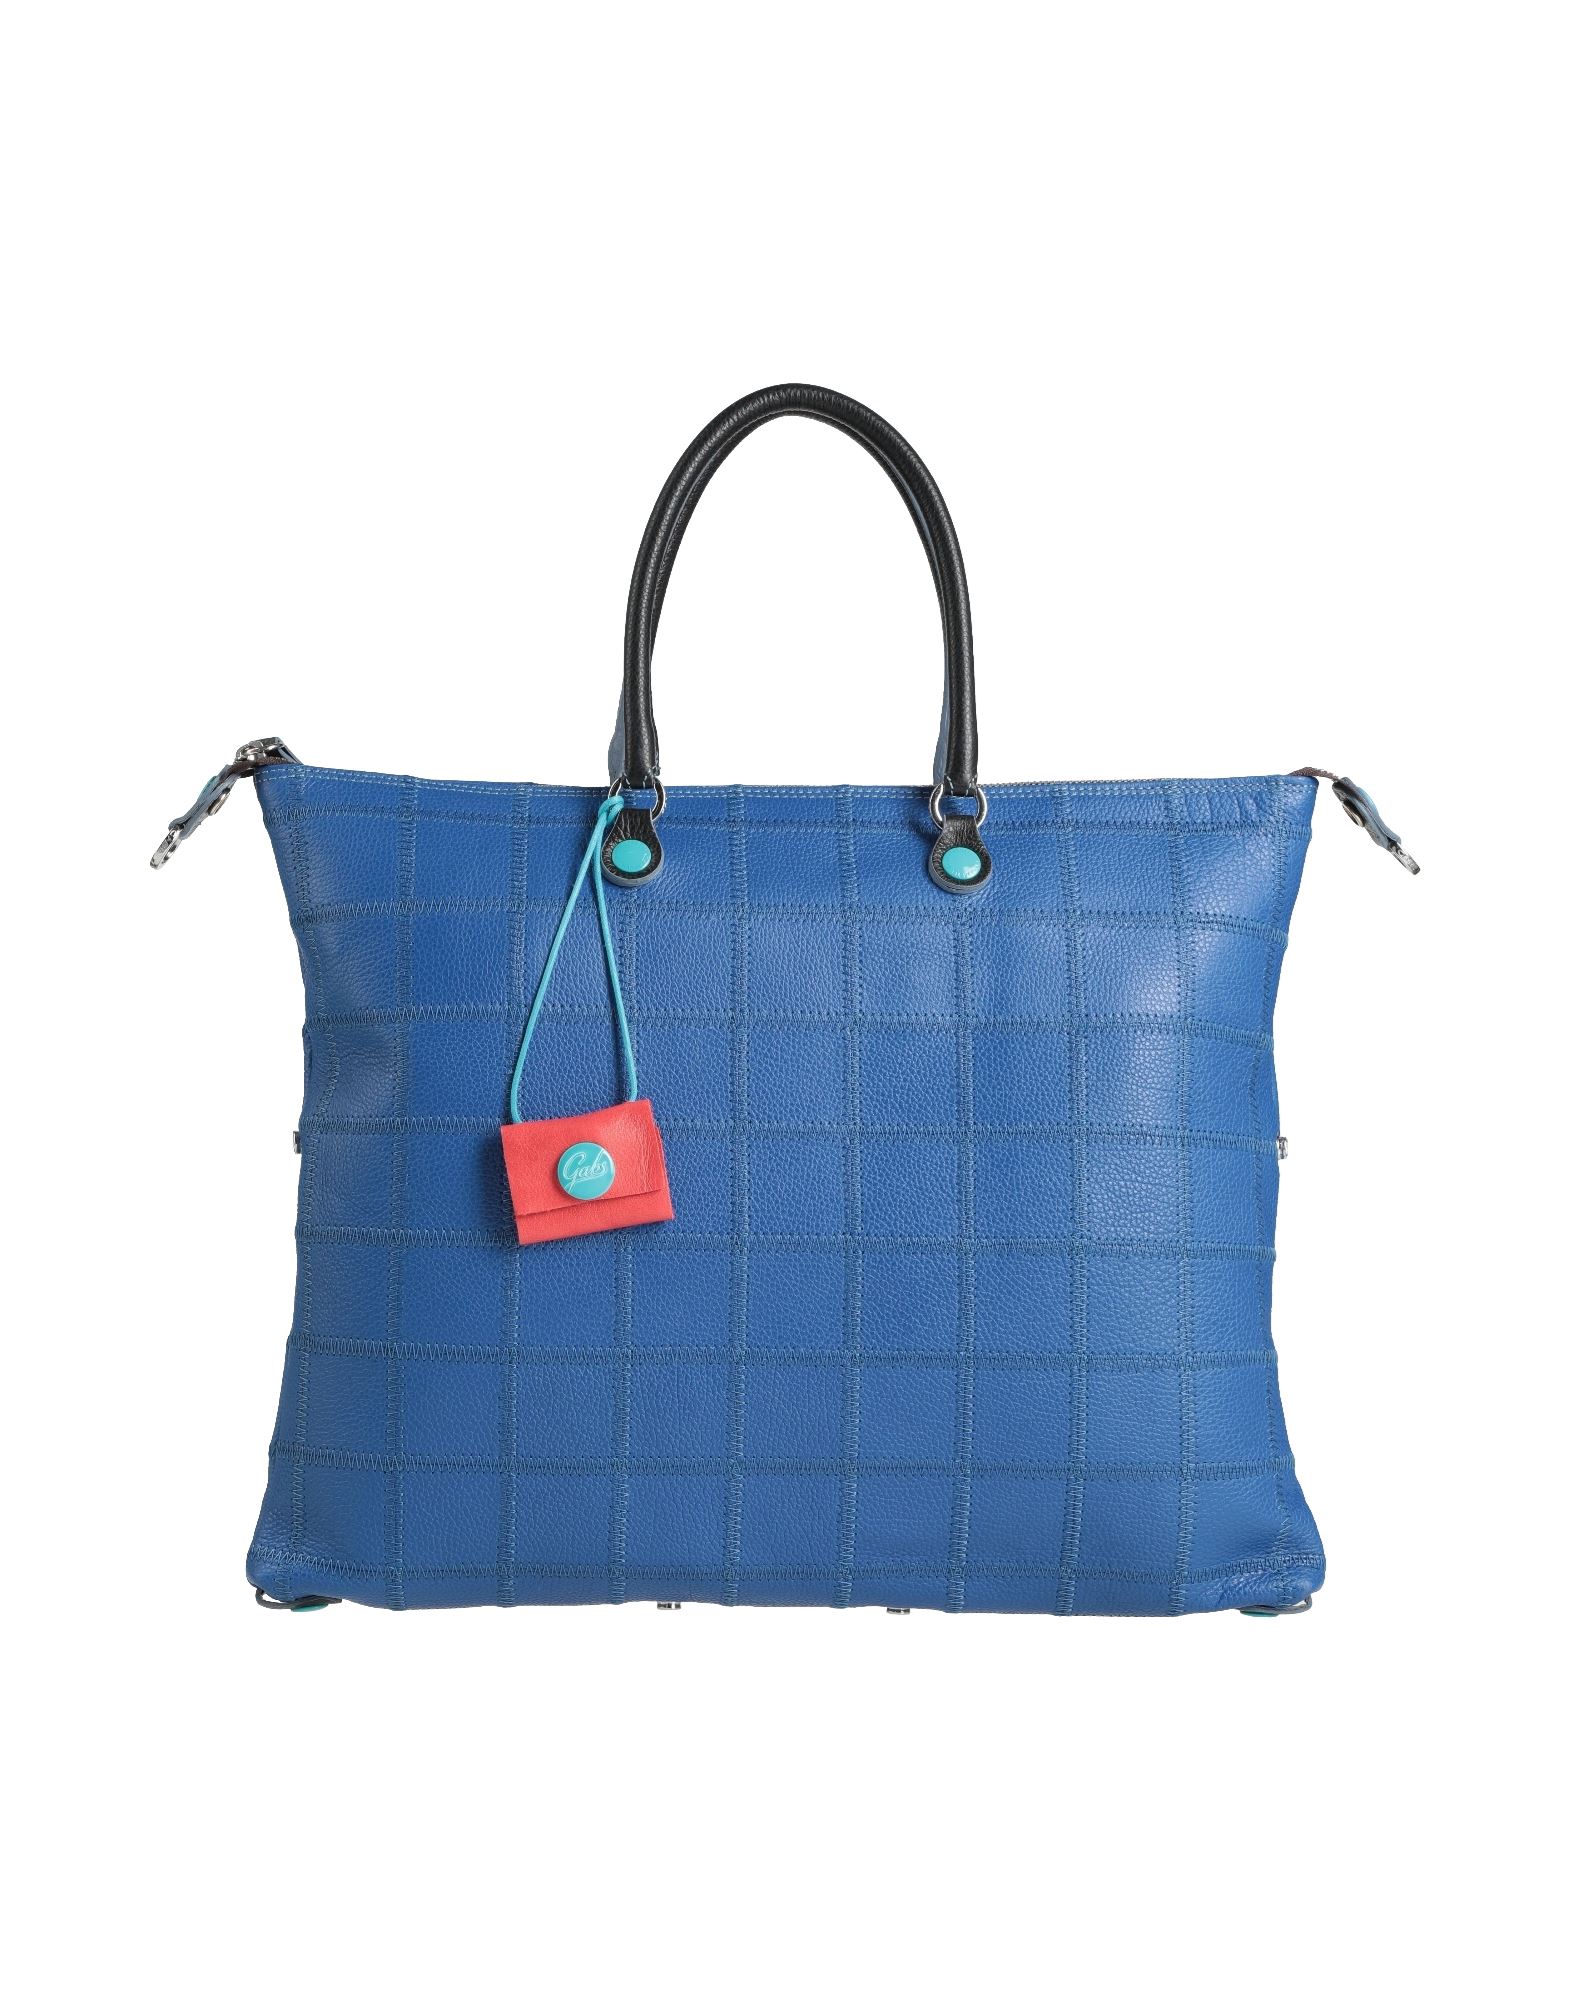 Gabs Handbags In Bright Blue